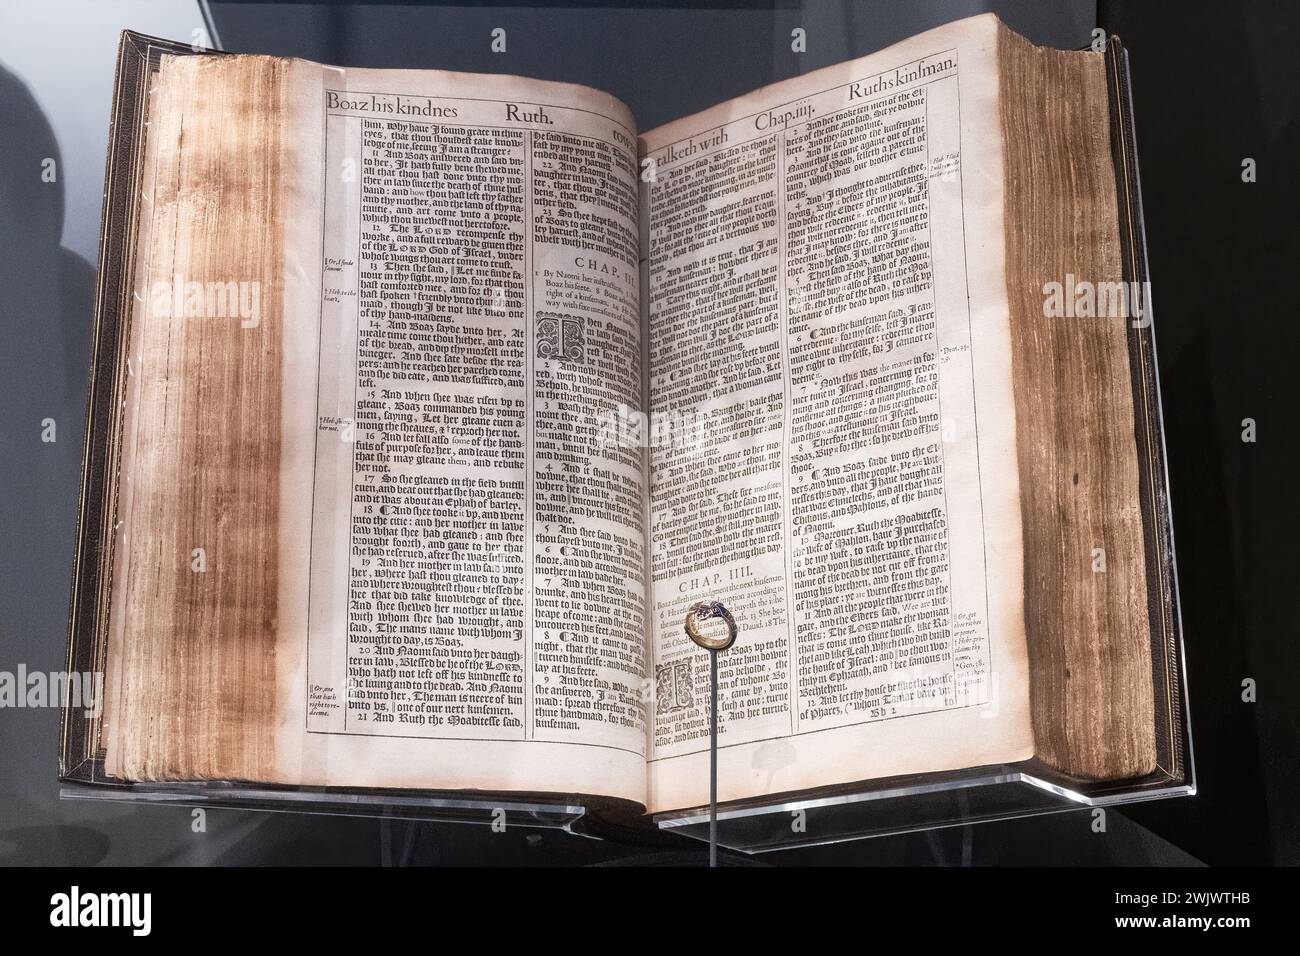 King James Bible exposée à la cathédrale de Winchester dans l'exposition Kings and Scribes, Hampshire, Angleterre, Royaume-Uni Banque D'Images